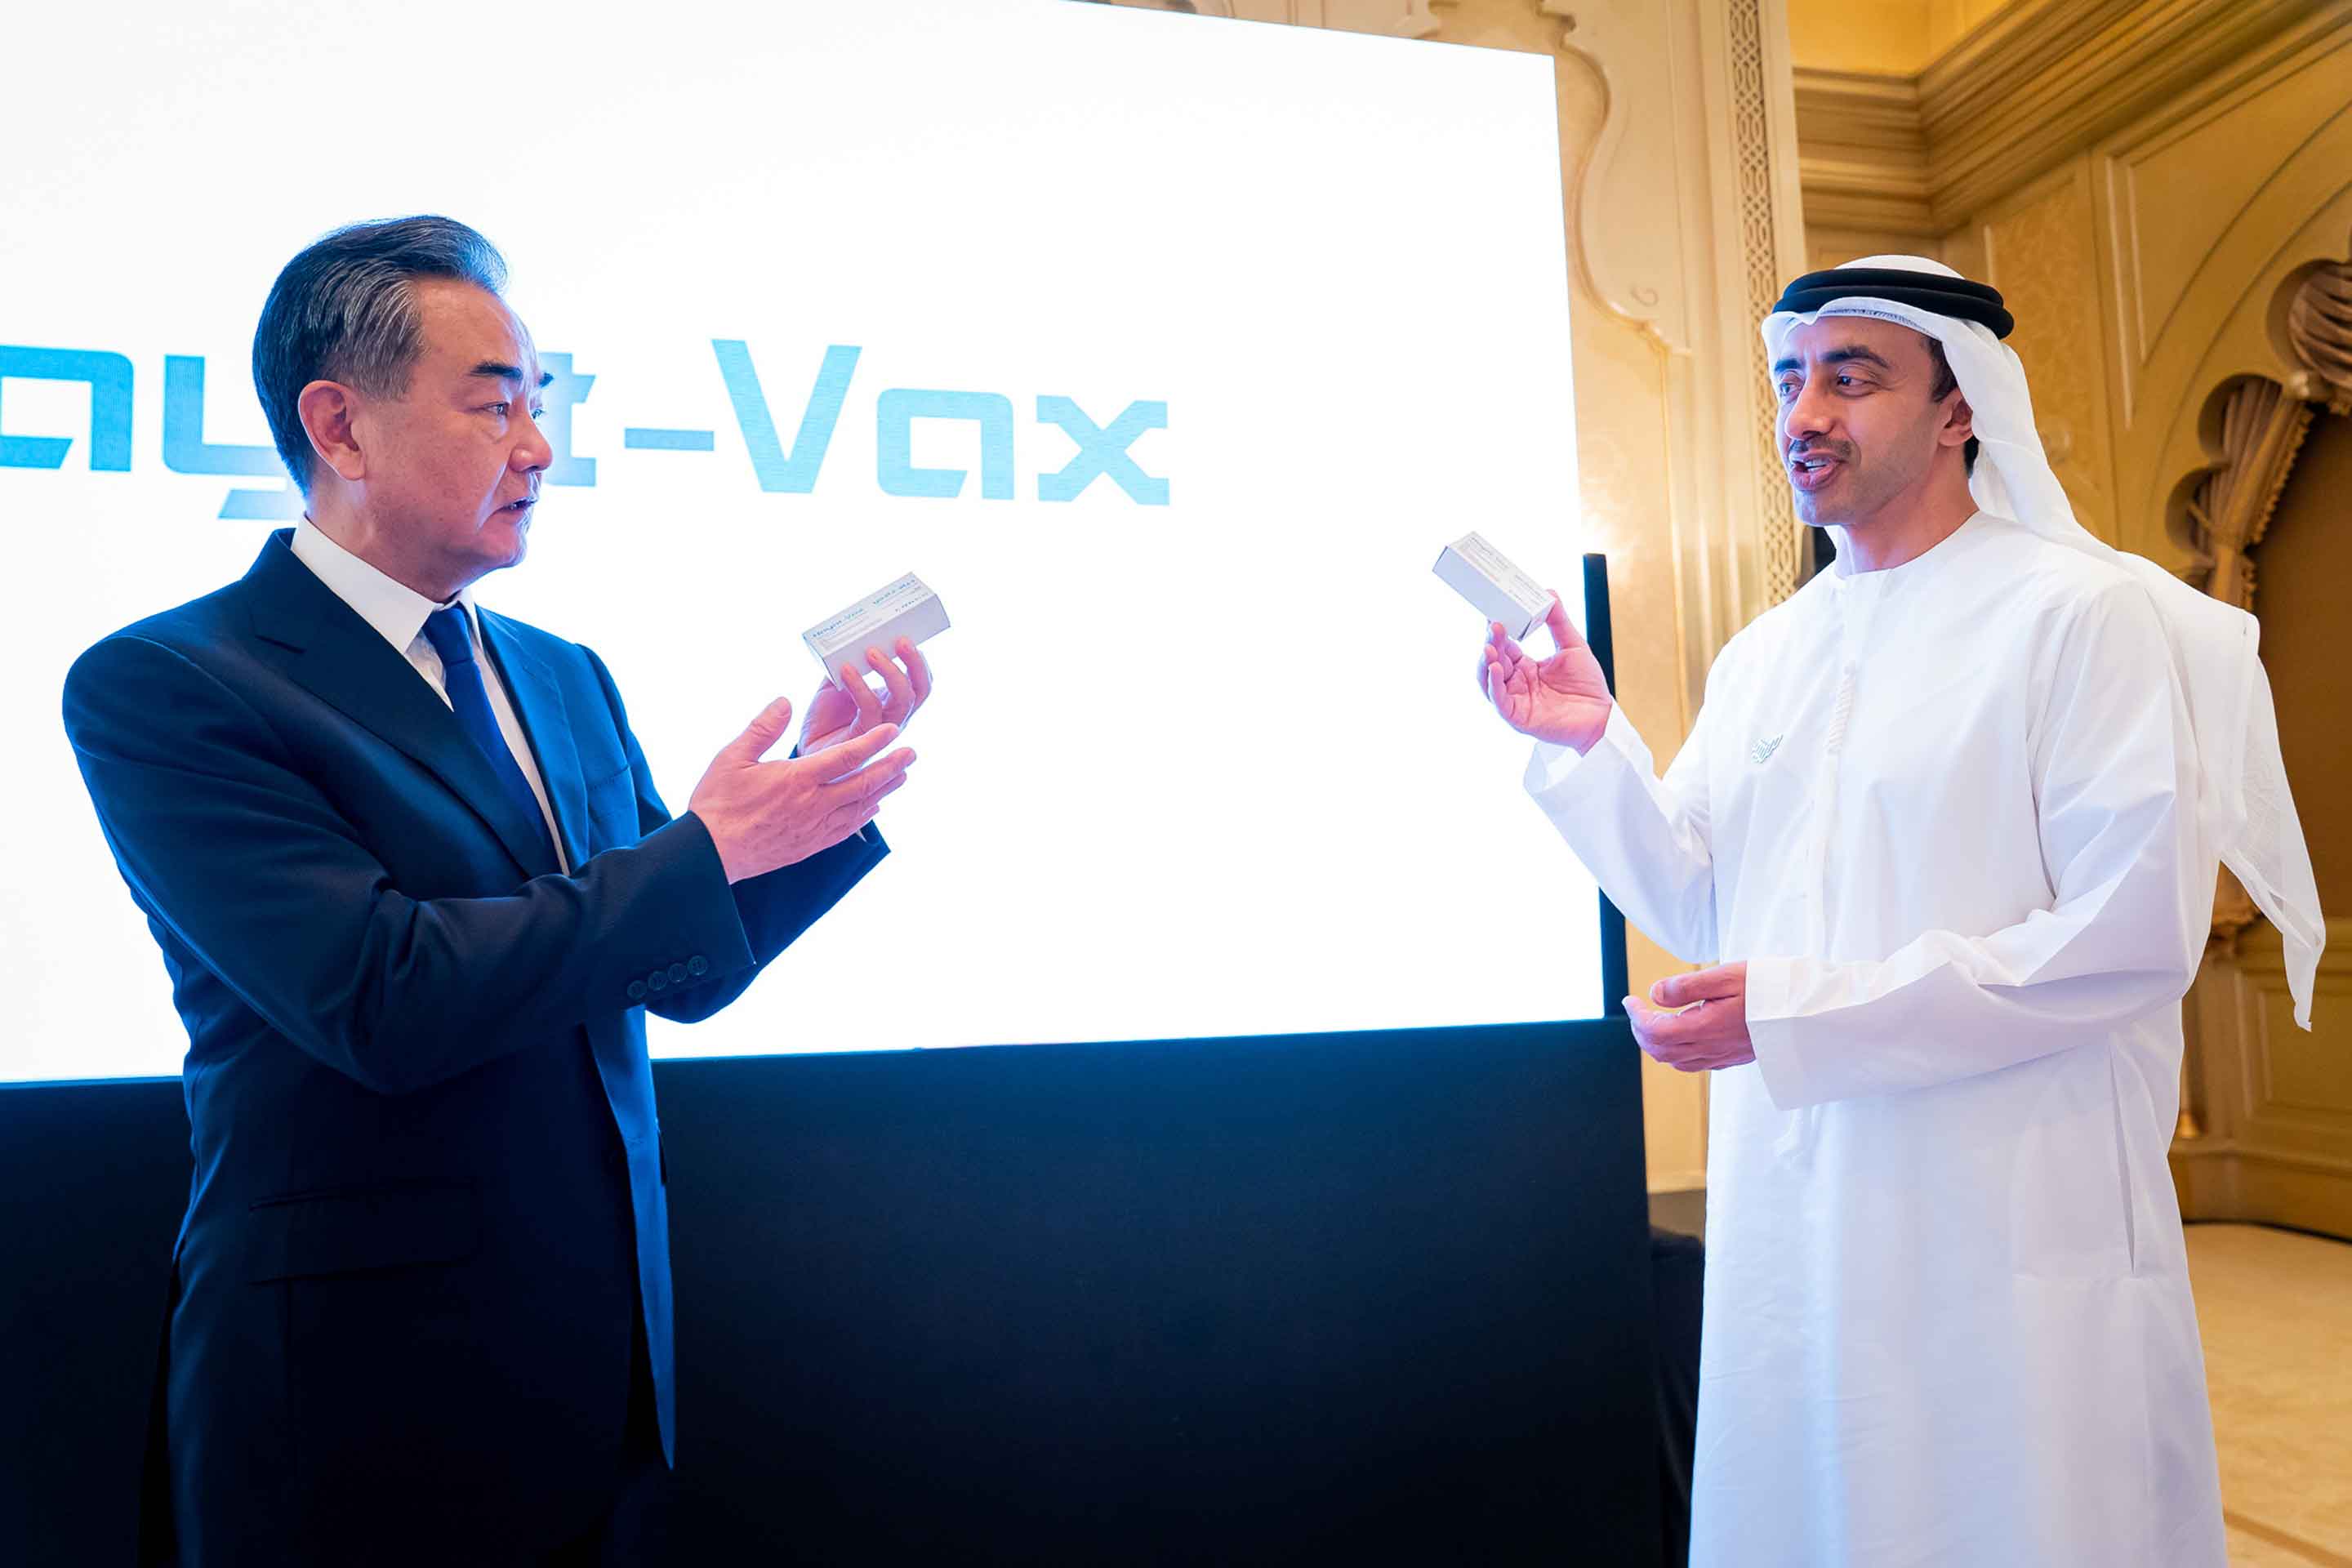 中国の王毅（ワン・イー）外相（左）はUAEのアブドラ・ビン・ザイード・アルナヒャン外相とともに、UAEで現地生産したシノファーム製ワクチン「ハヤット・バックス」を披露した。